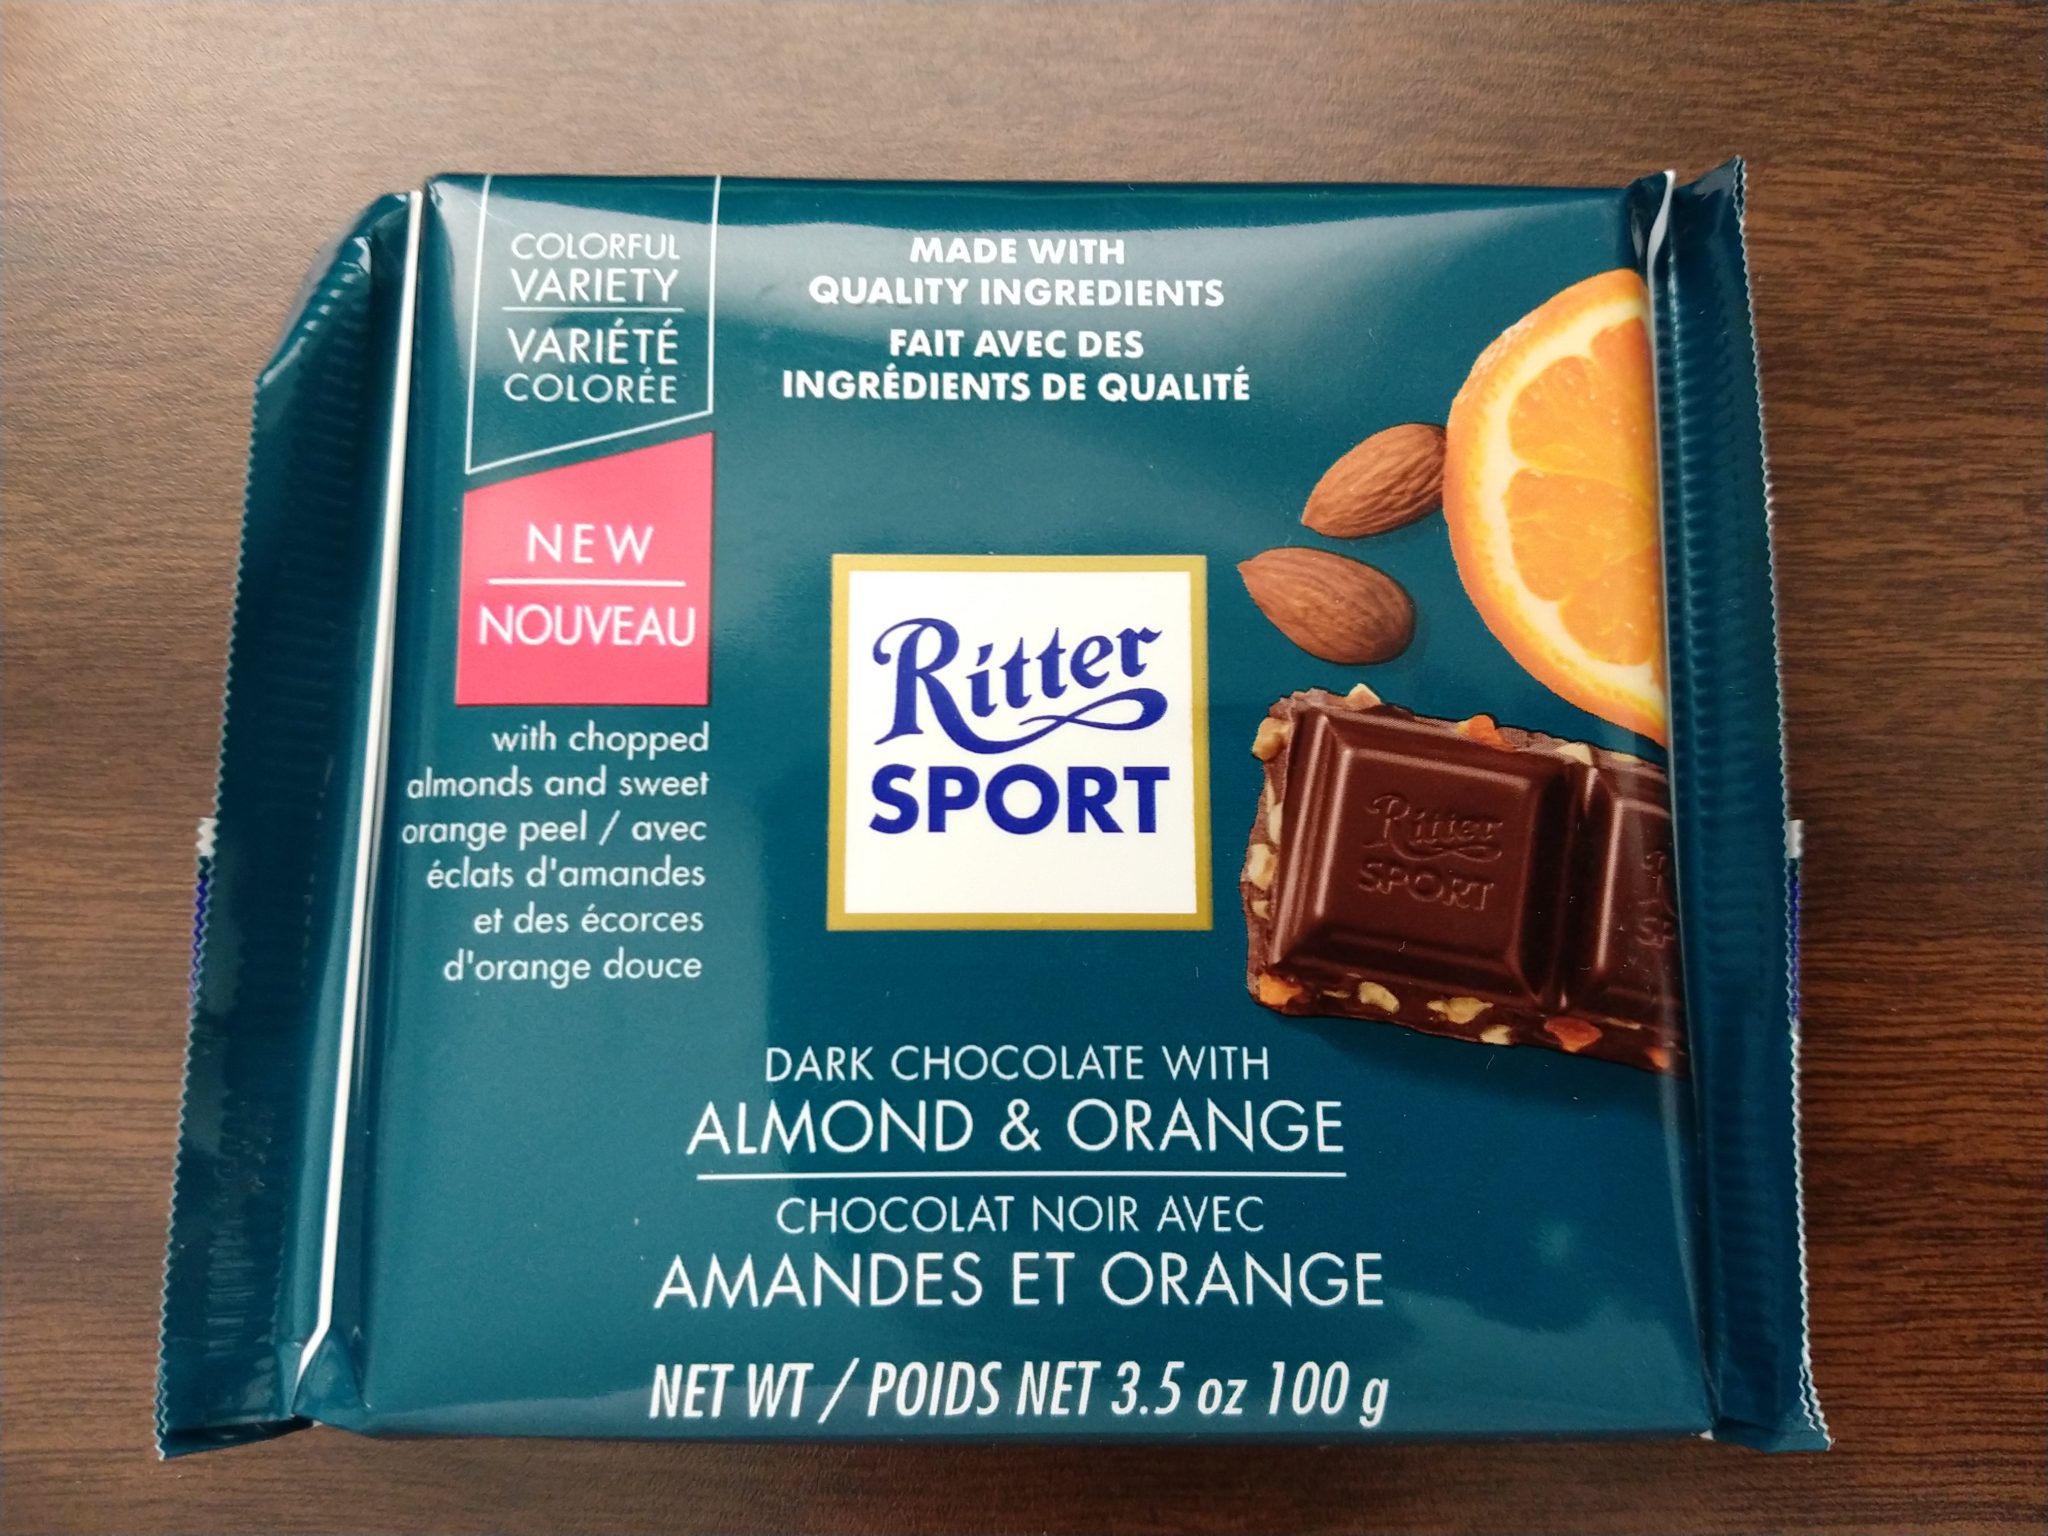 Ritter Sport – Dark Chocolate with Almond & Orange